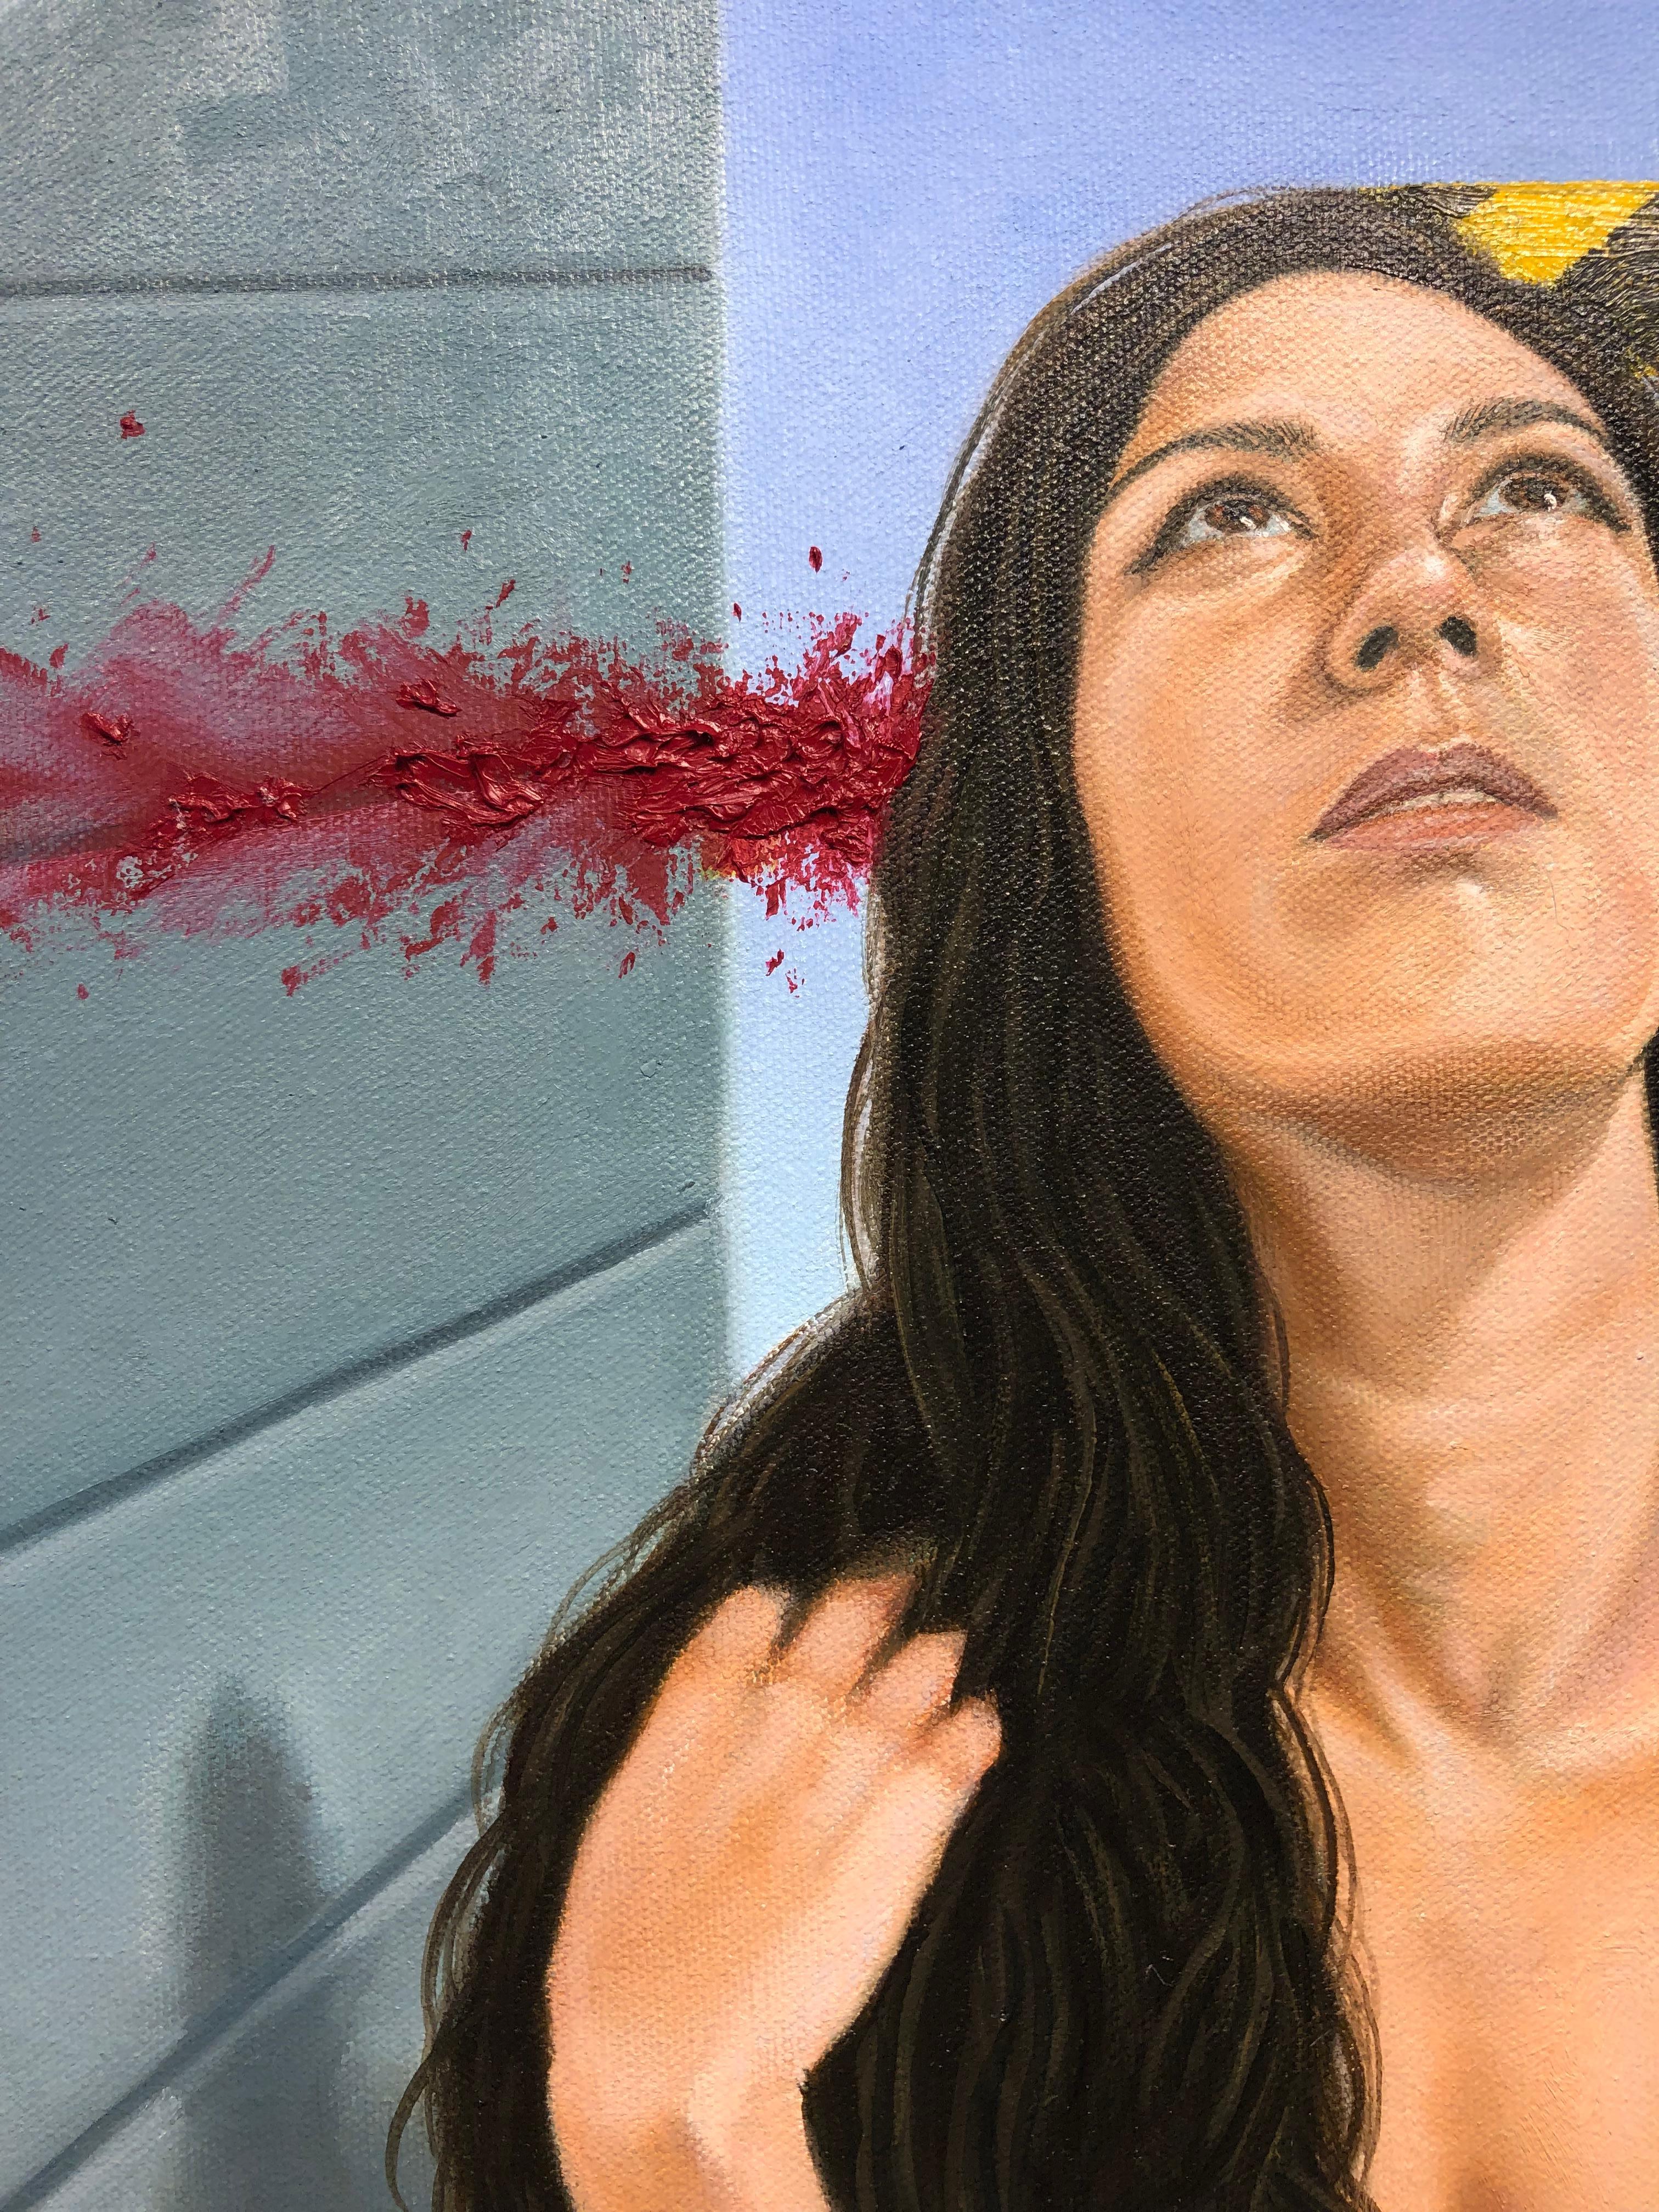 Comfort Zone, Schaukelnde weibliche Figur in Akt, Schaukeln nach oben, Öl auf Leinwand – Painting von Juan Barragán